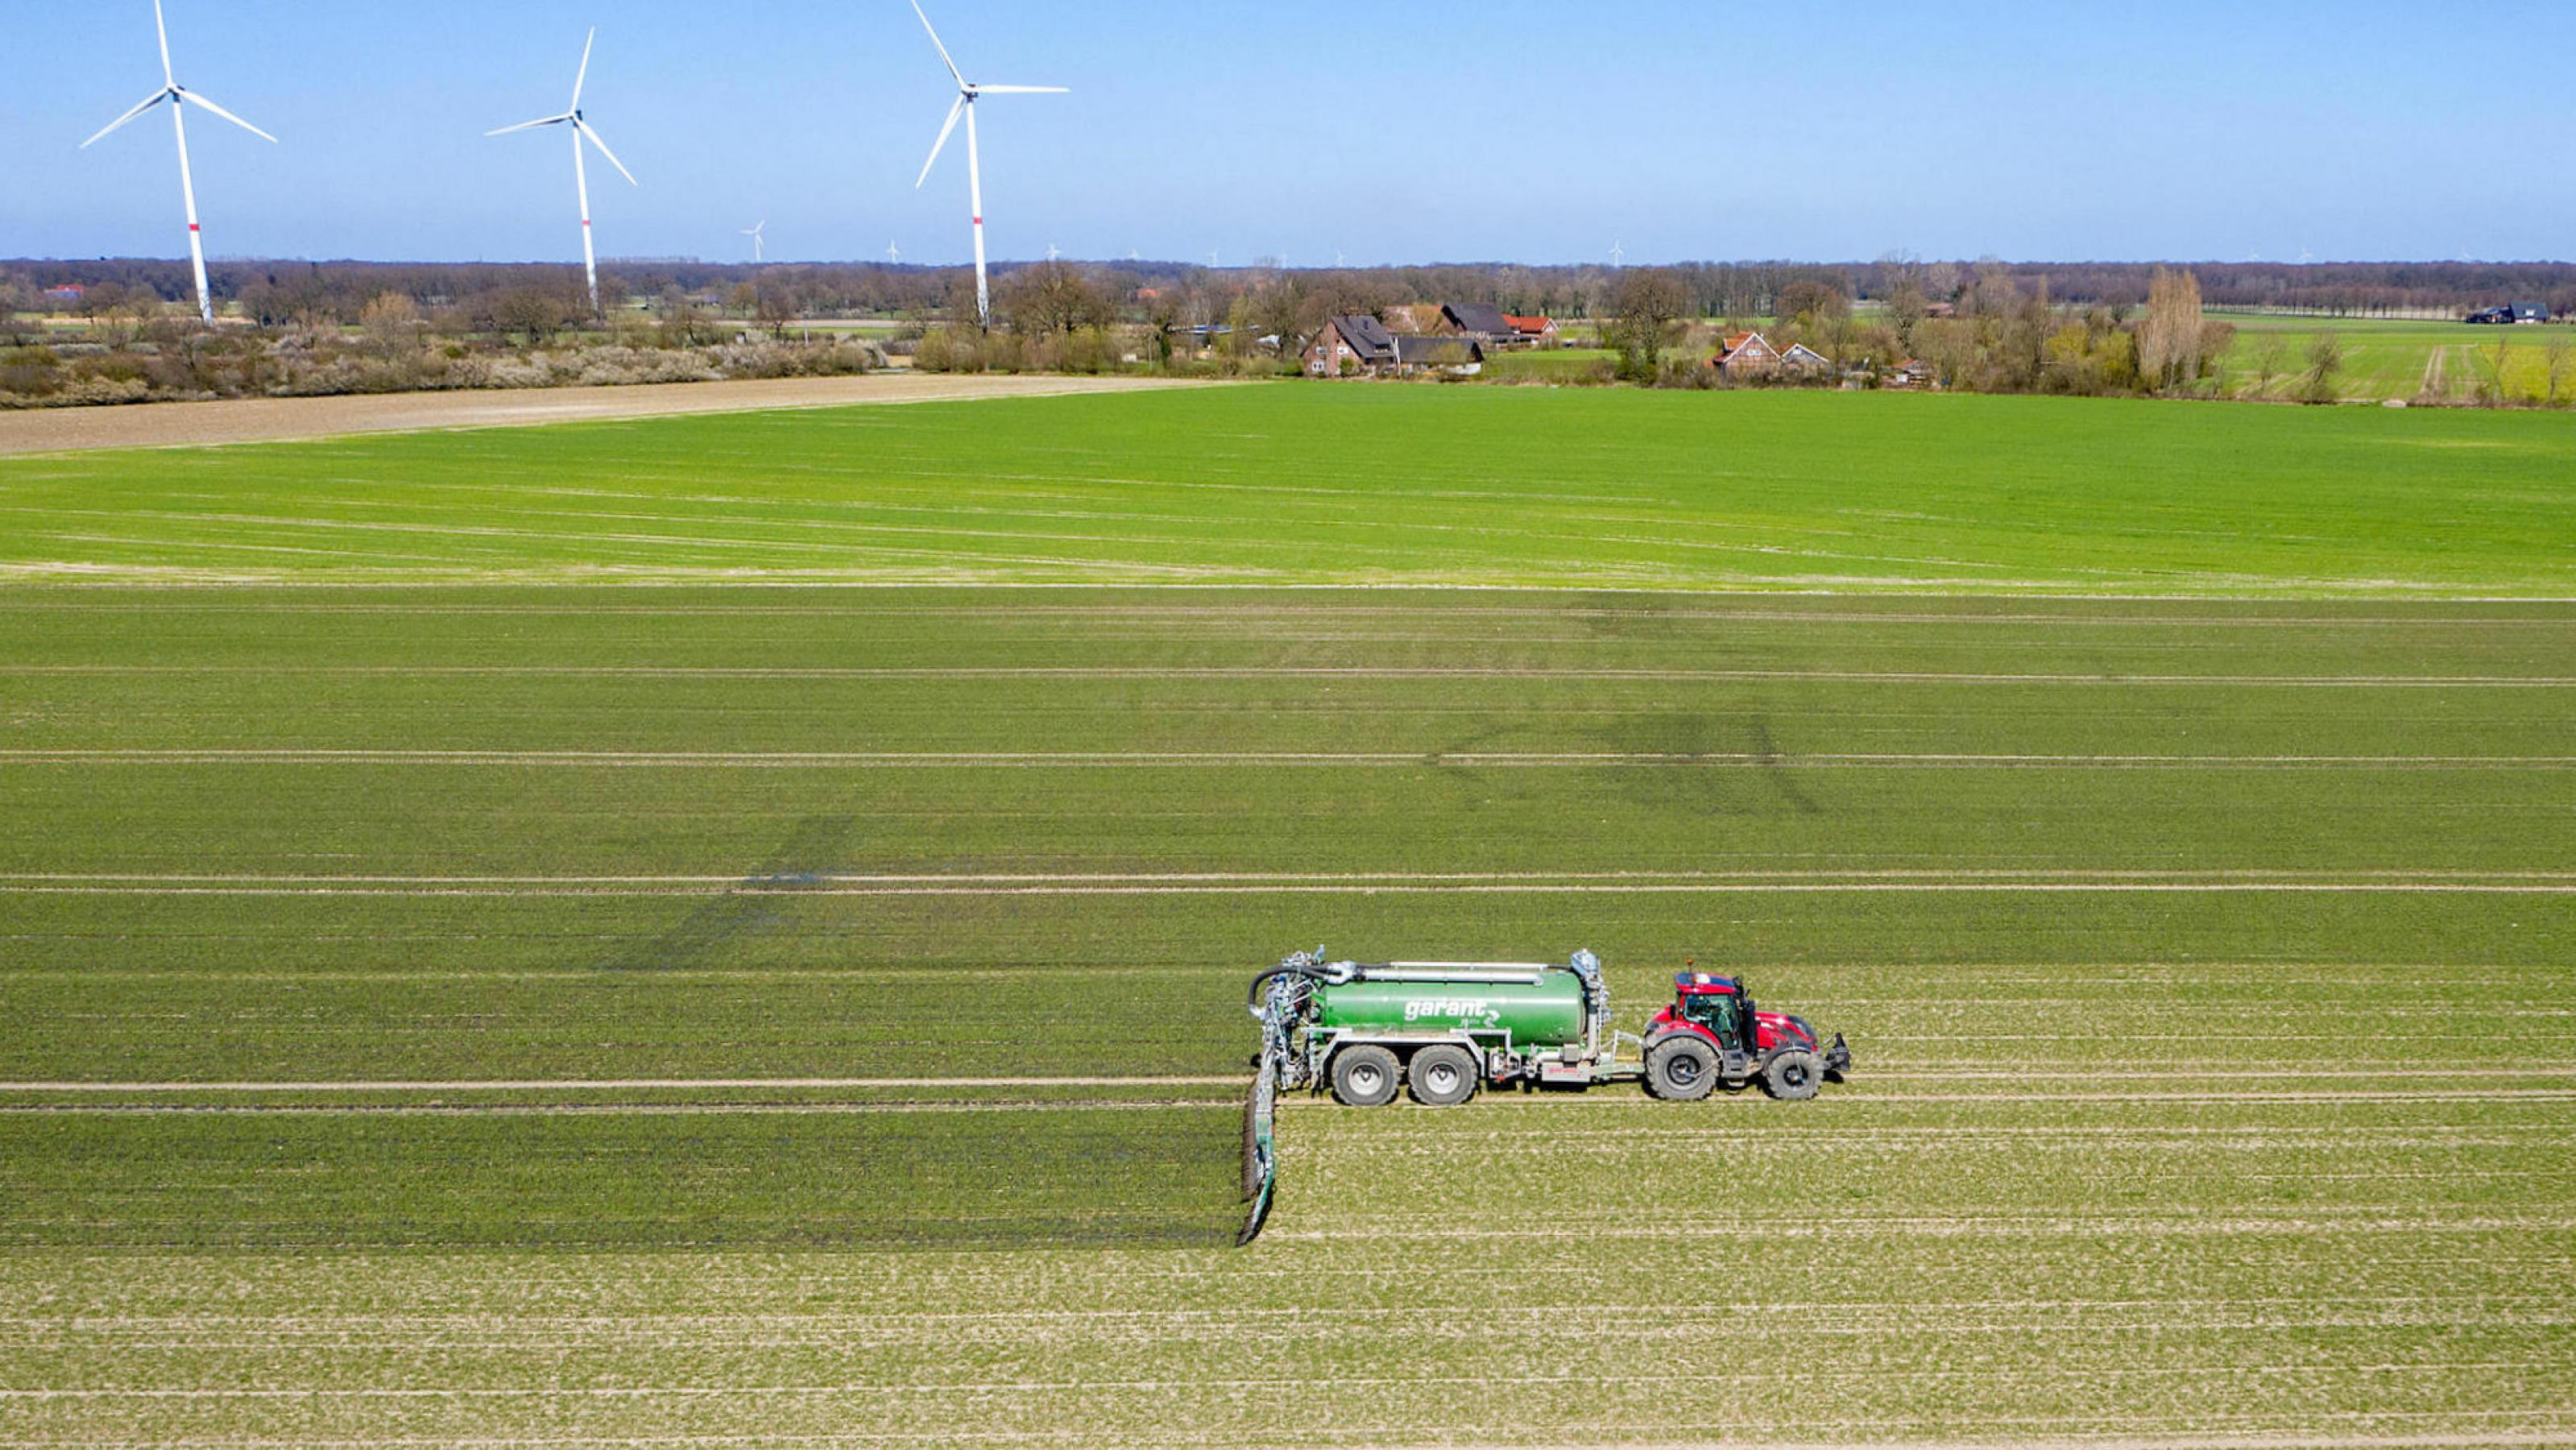 Luftaufnahme: Ein Trecker mit Güllefass bei der Ausbringung von Flüssigmist zur Düngung eines jungen Getreidebestandes im Frühjahr, im Hintergrund drei Windräder.